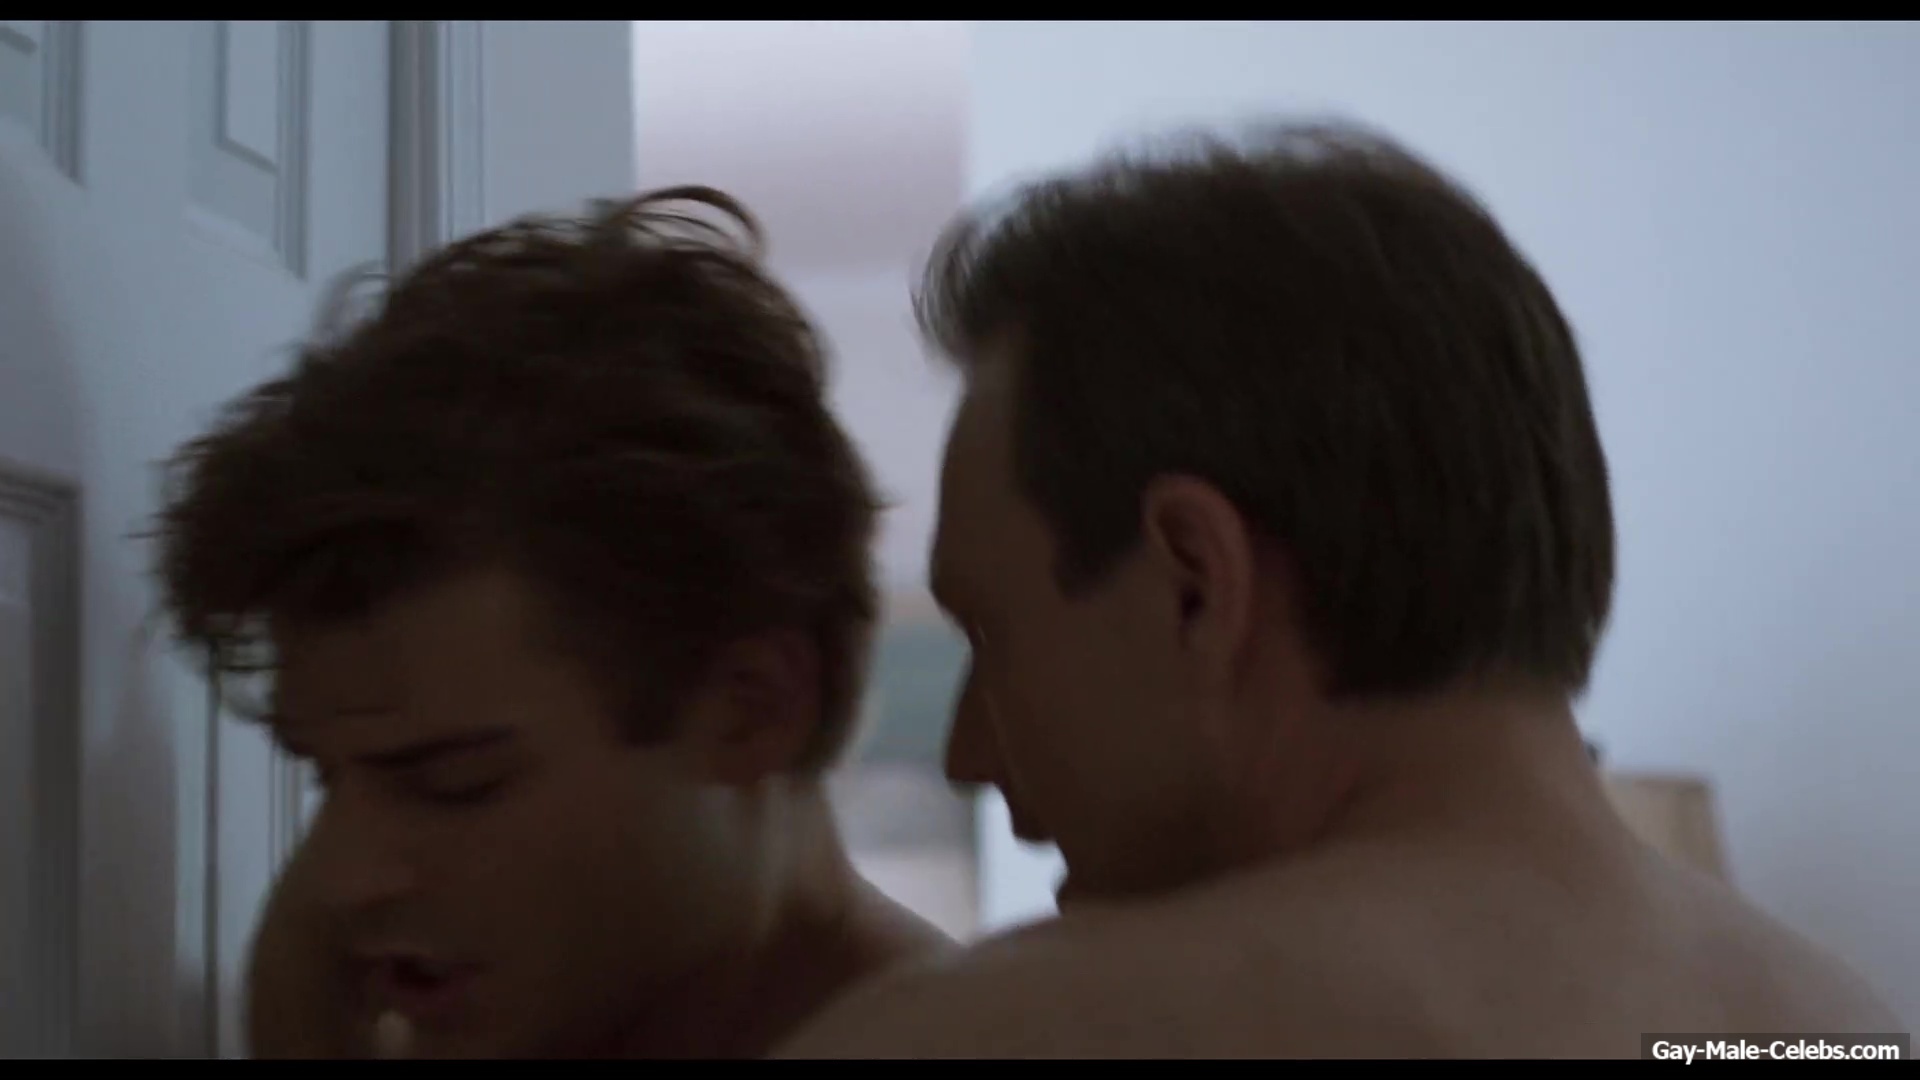 Christian Slater Hot Gay Sex Scenes in King Cobra